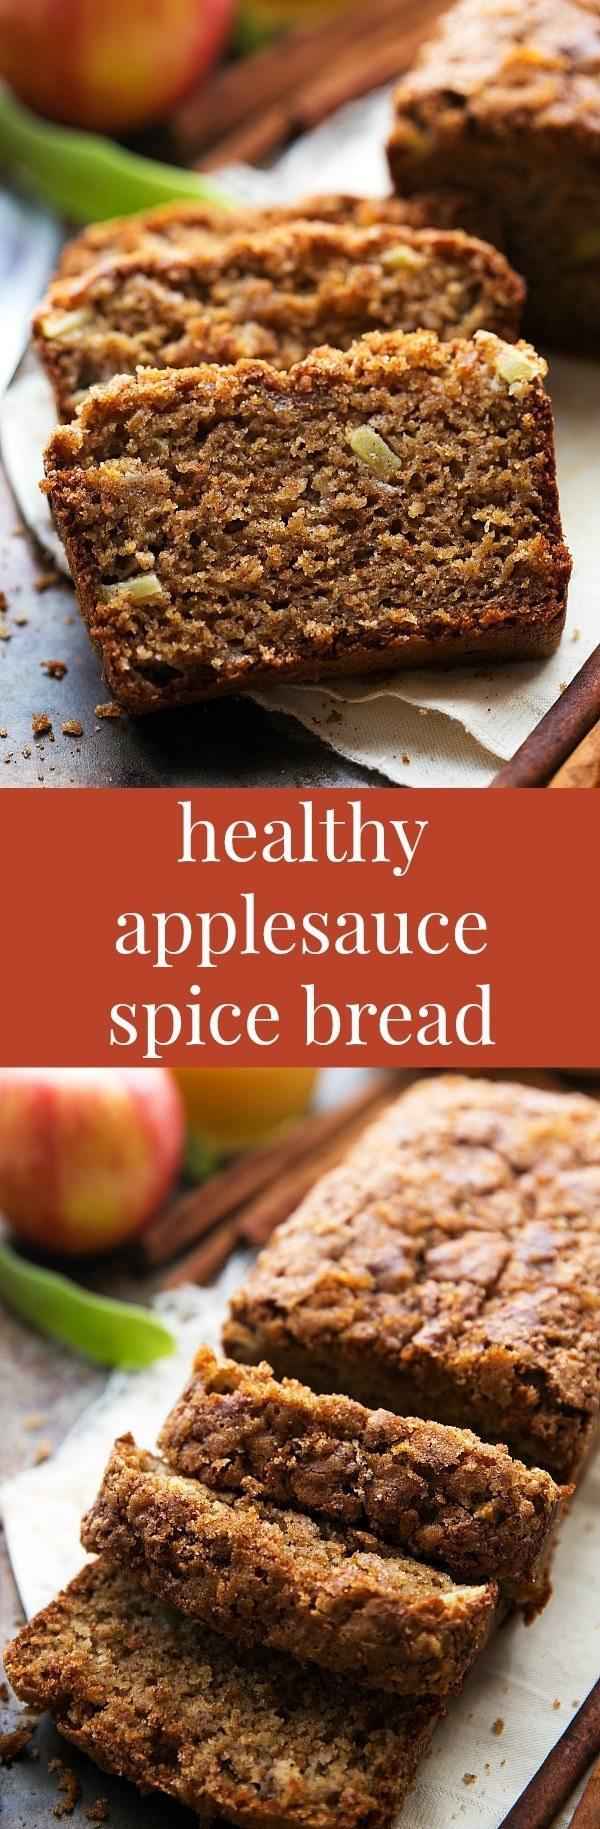 Healthy Apple Bread Recipe
 healthy applesauce bread recipe